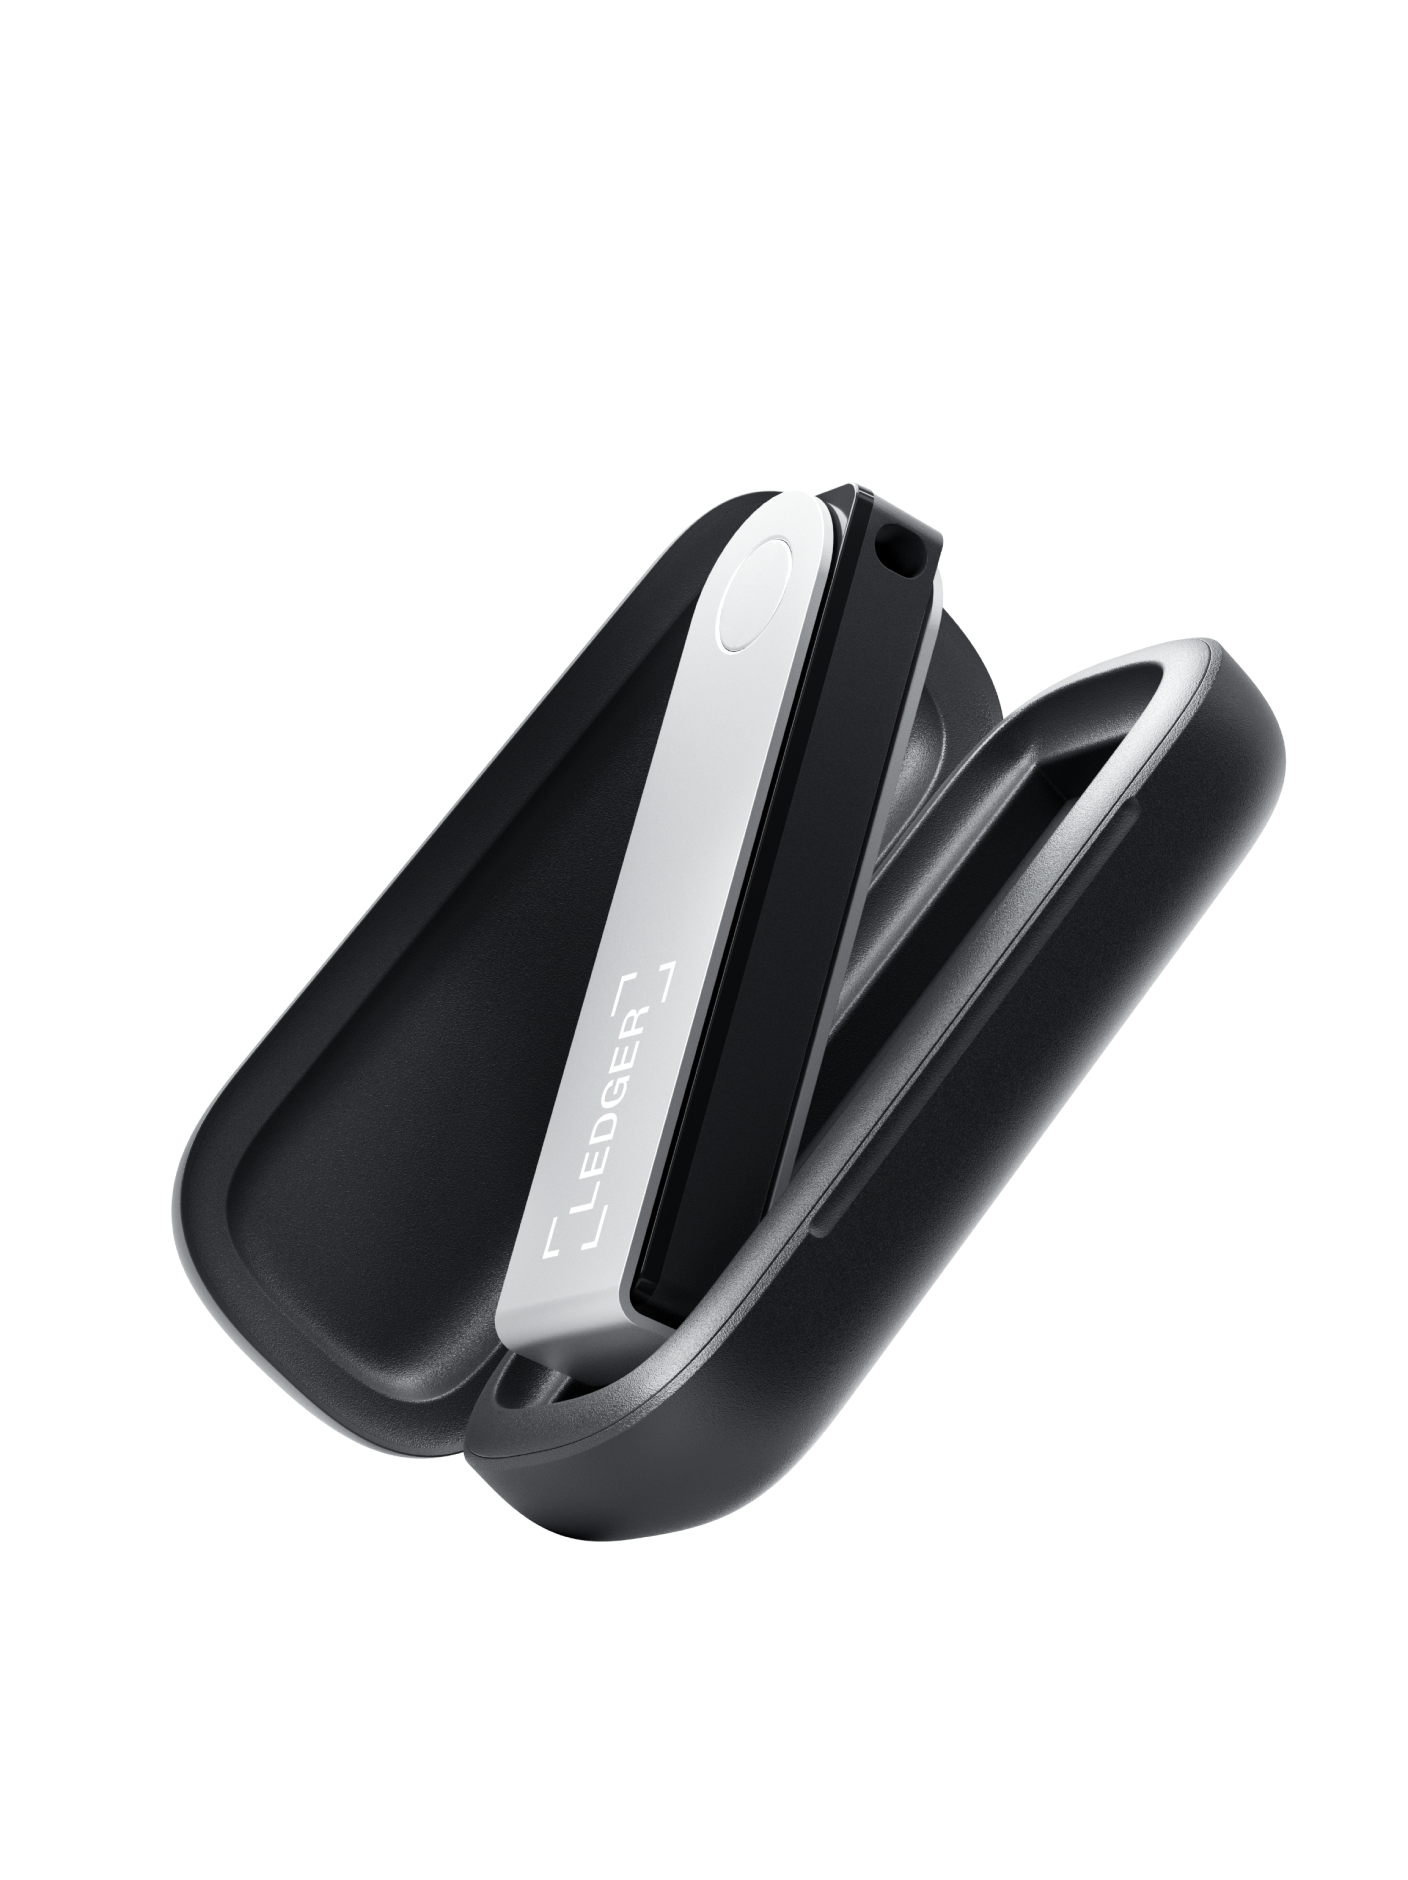 Ledger Nano X Crypto Hardware Wallet (Onyx Black) - Bluetooth - La  meilleure façon d'acheter, de gérer et de cultiver tous vos actifs  numériques en toute sécurité : : Électronique